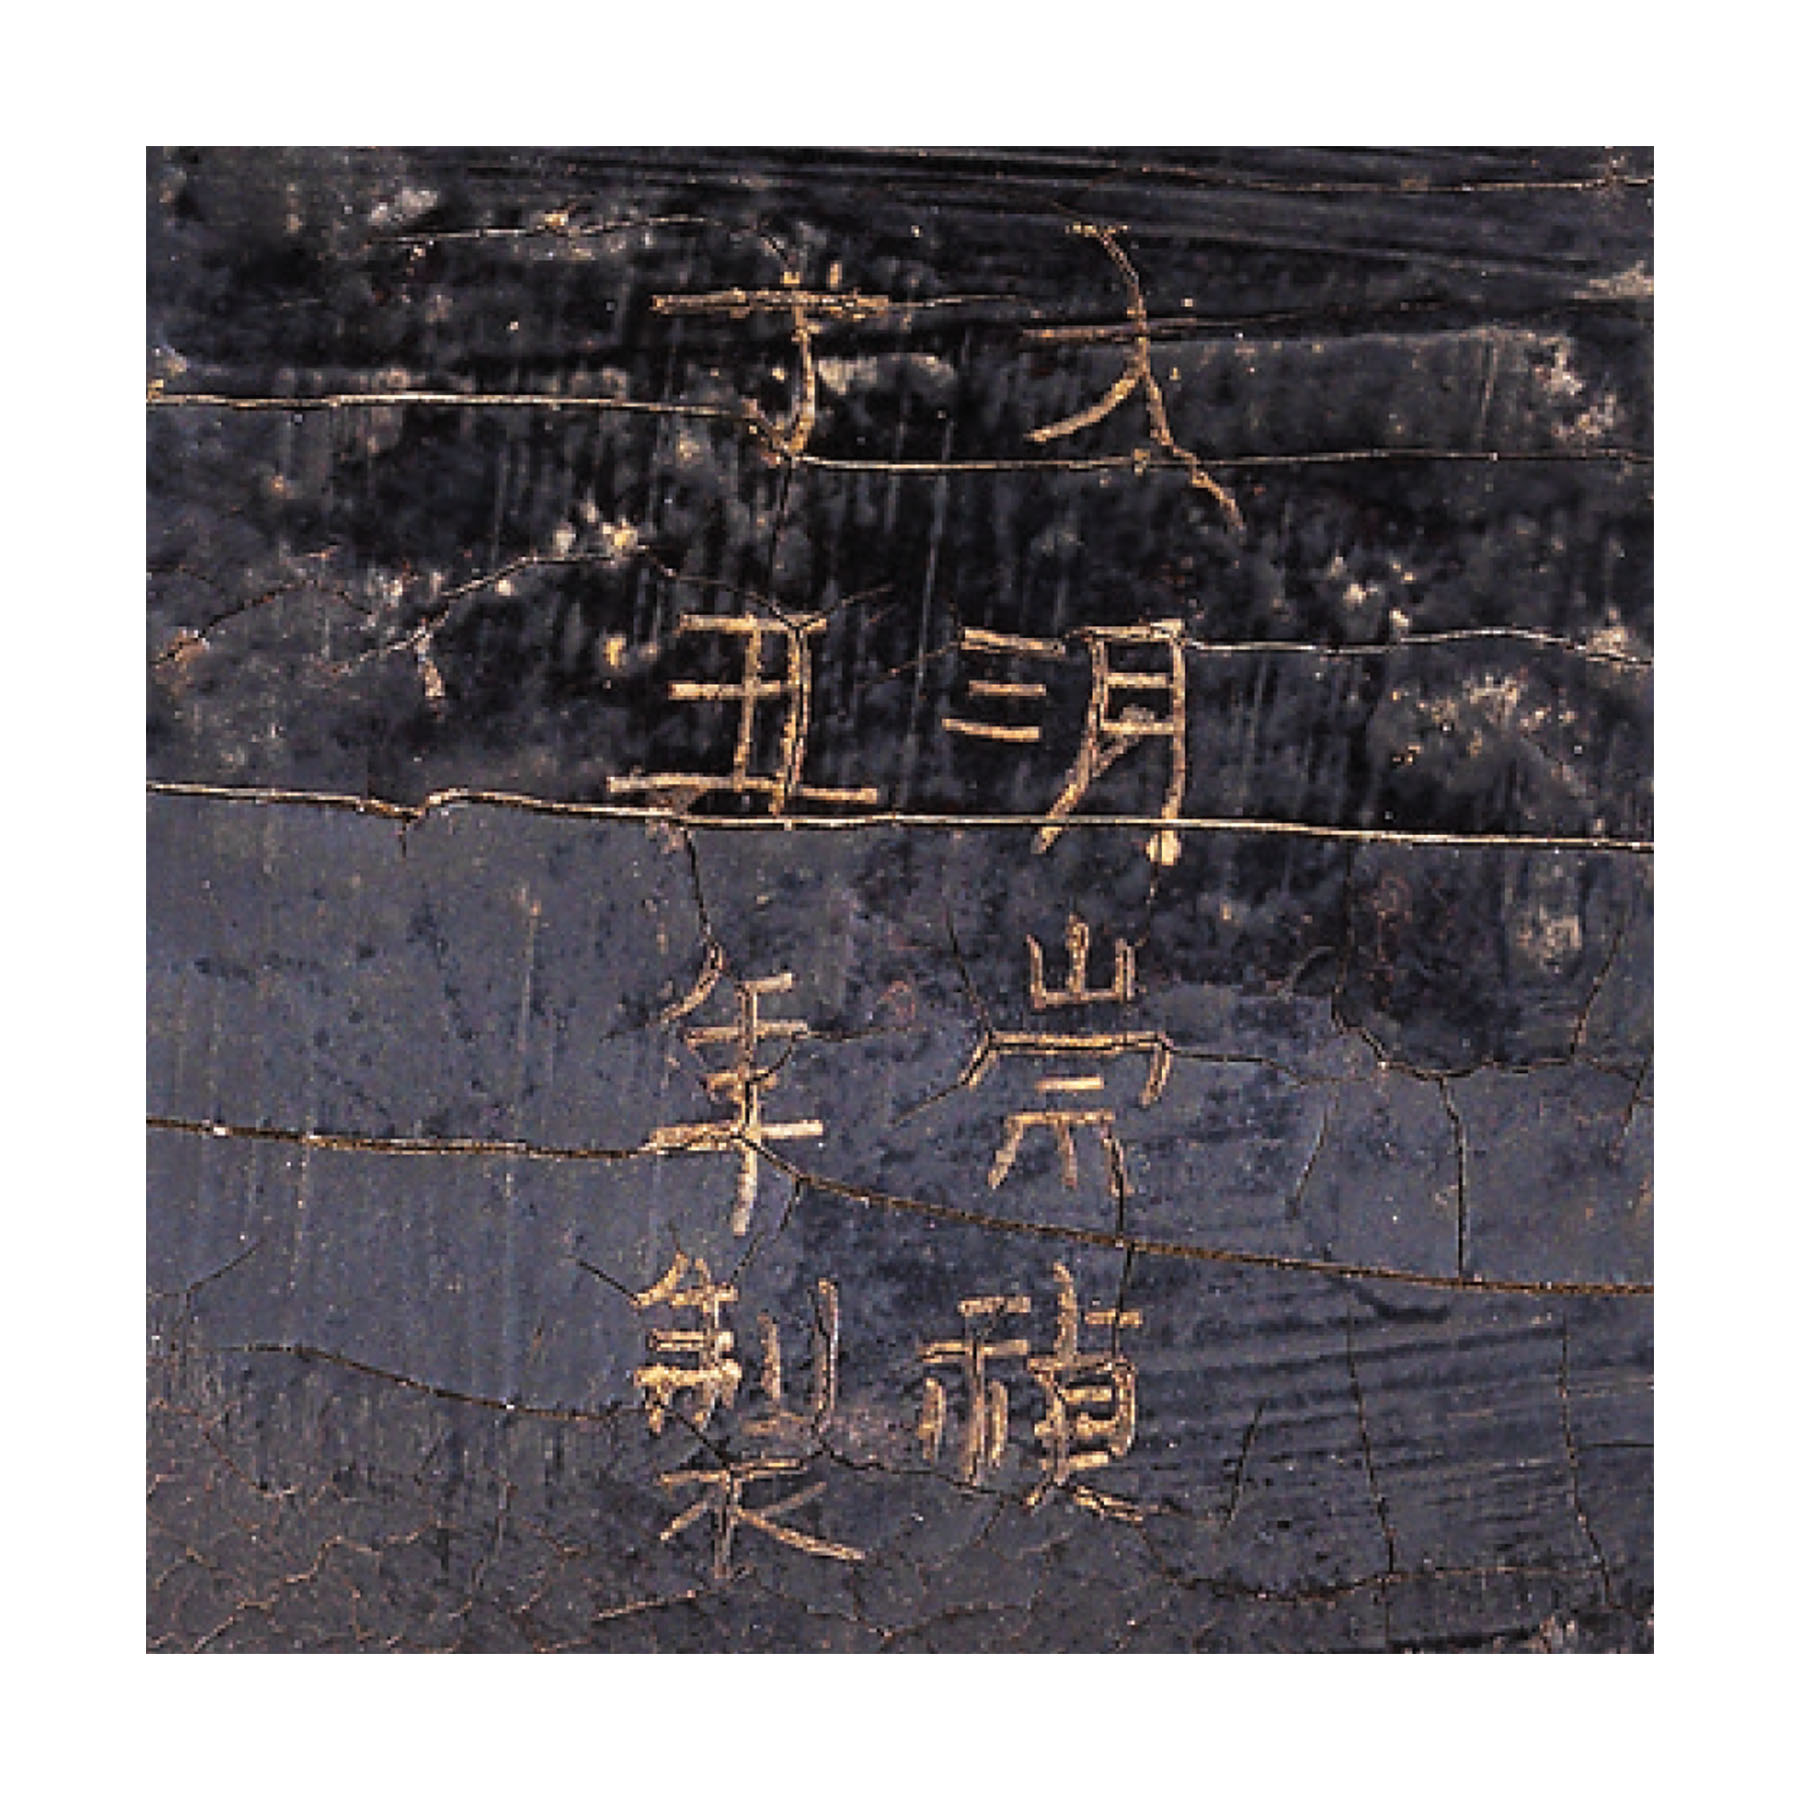 拍品3227| 明崇禎丁丑年（1637）　　 御製填漆戧金雲龍戲珠紋香几 填金「大明崇禎丁丑年製」刻款